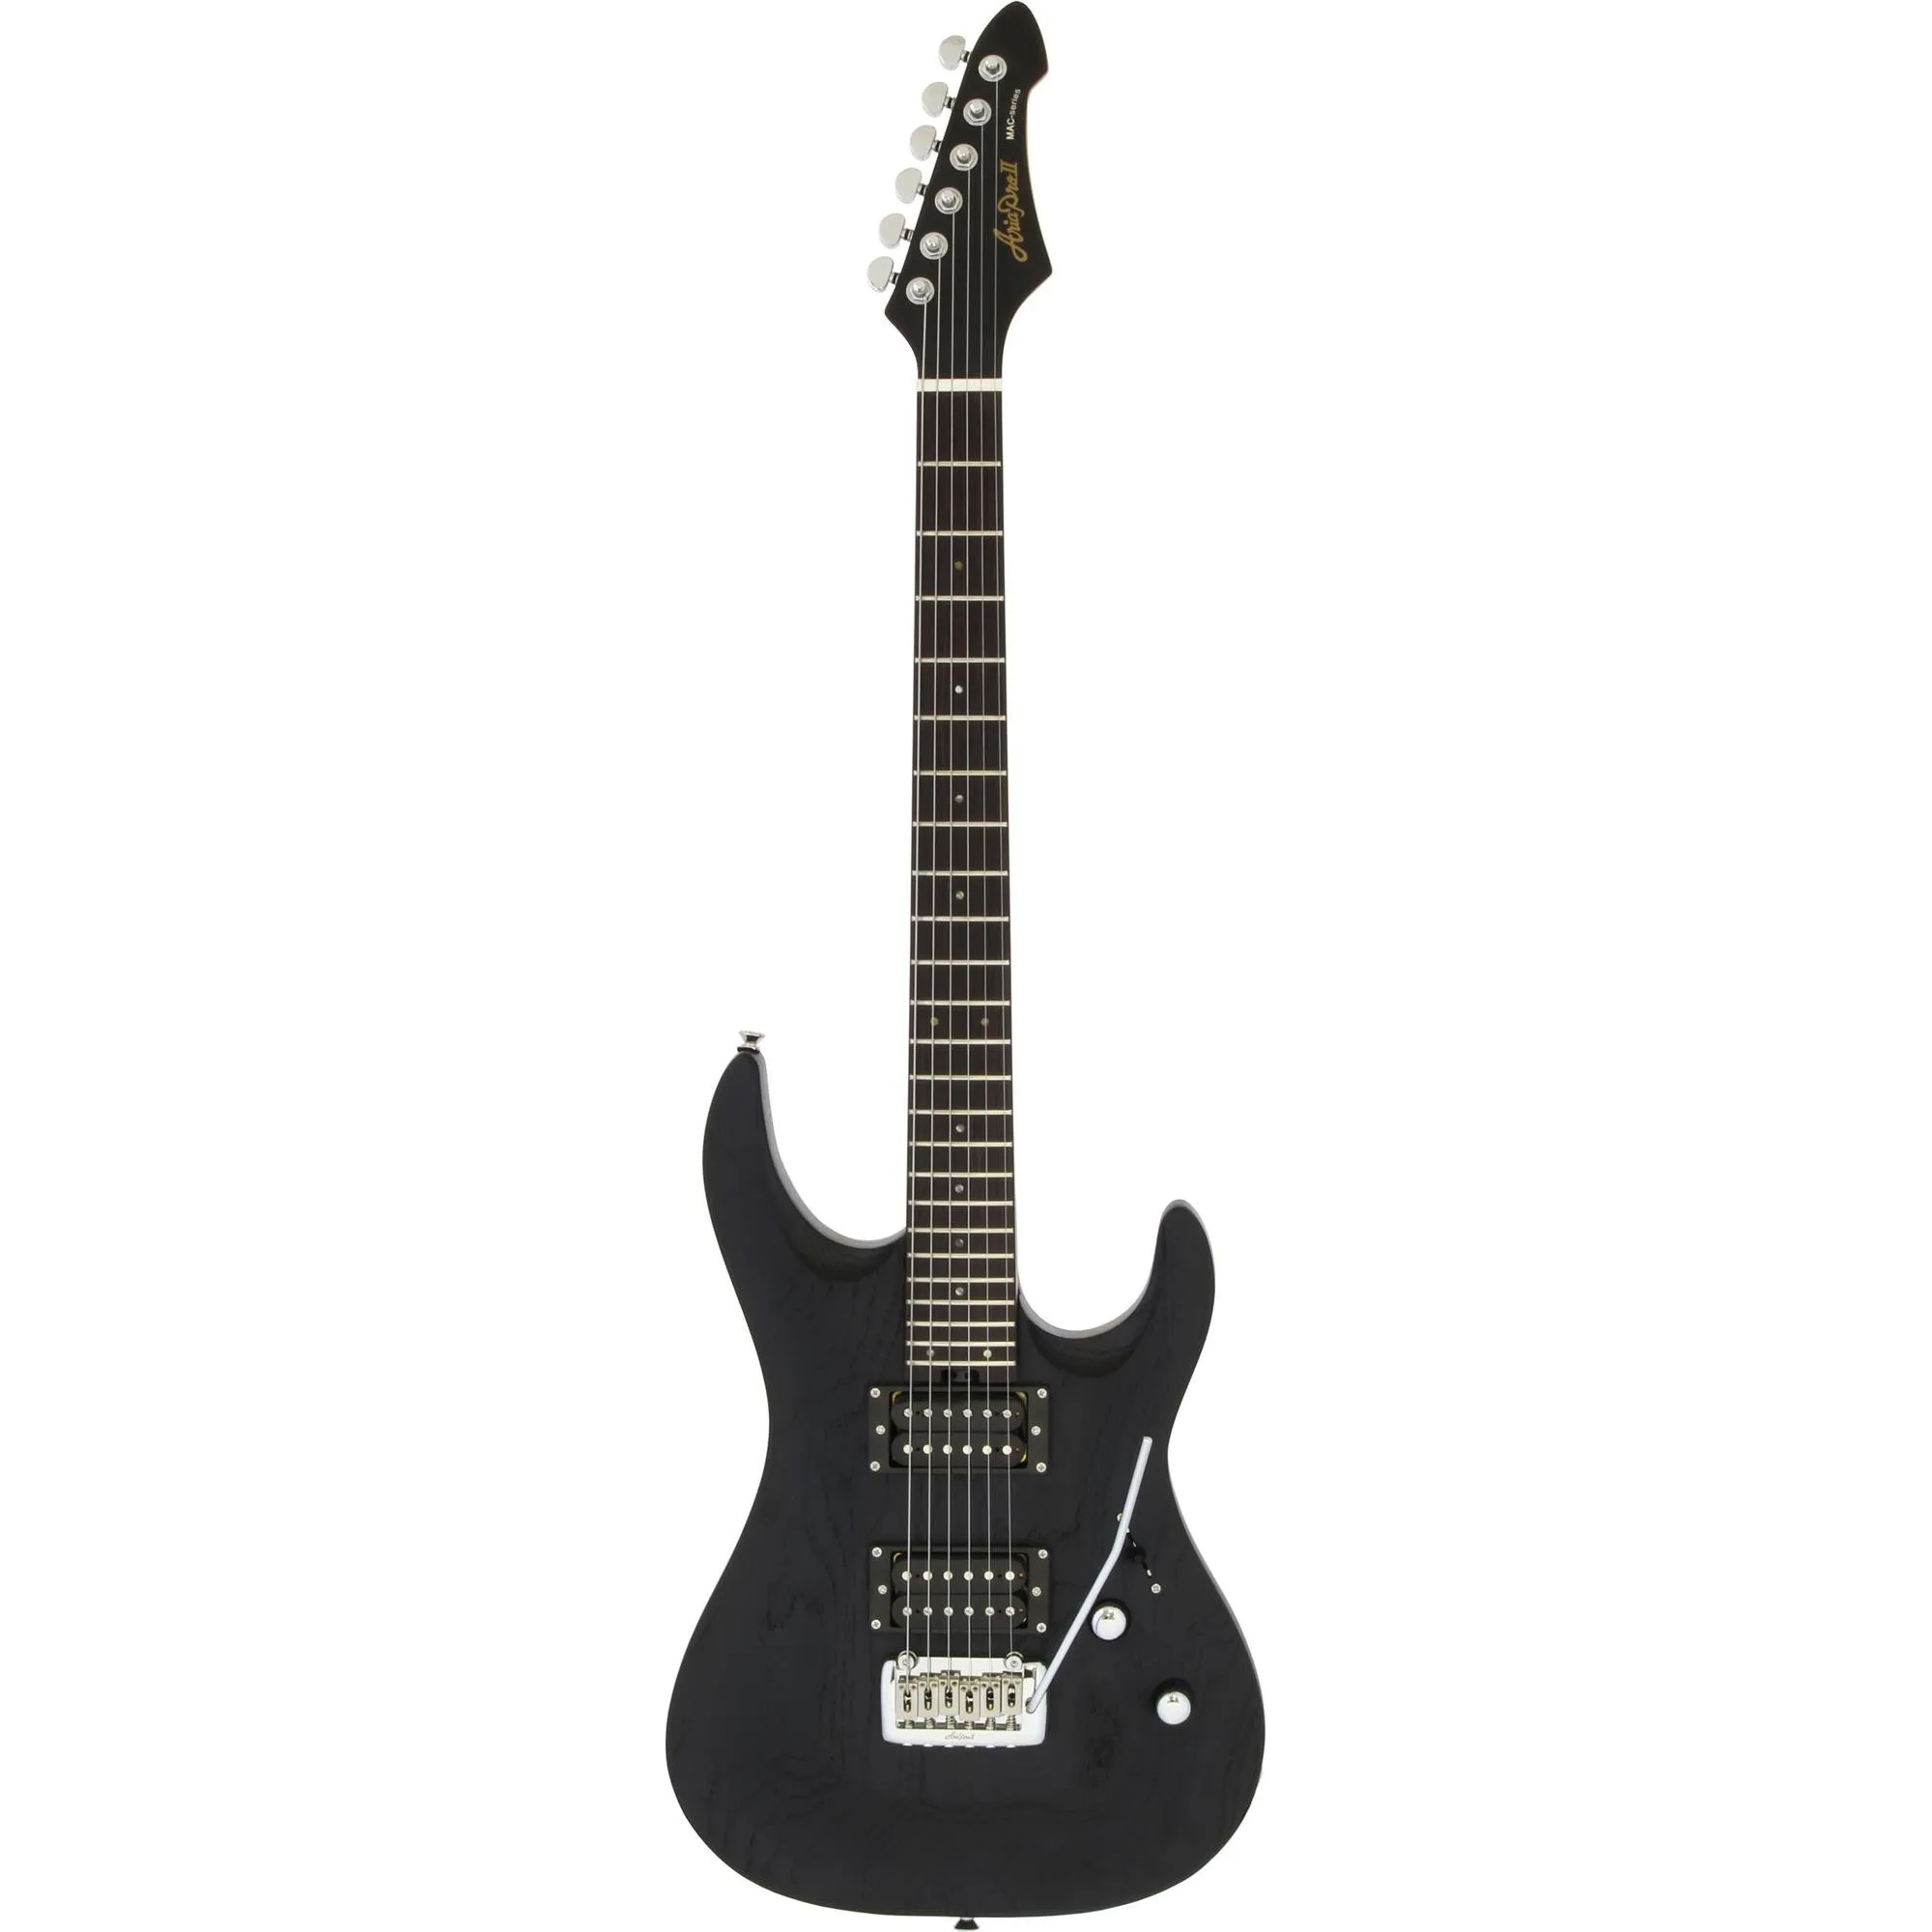 Guitarra Aria Pro II MAC-DLX Stained Black por 4.156,73 à vista no boleto/pix ou parcele em até 12x sem juros. Compre na loja Aria!